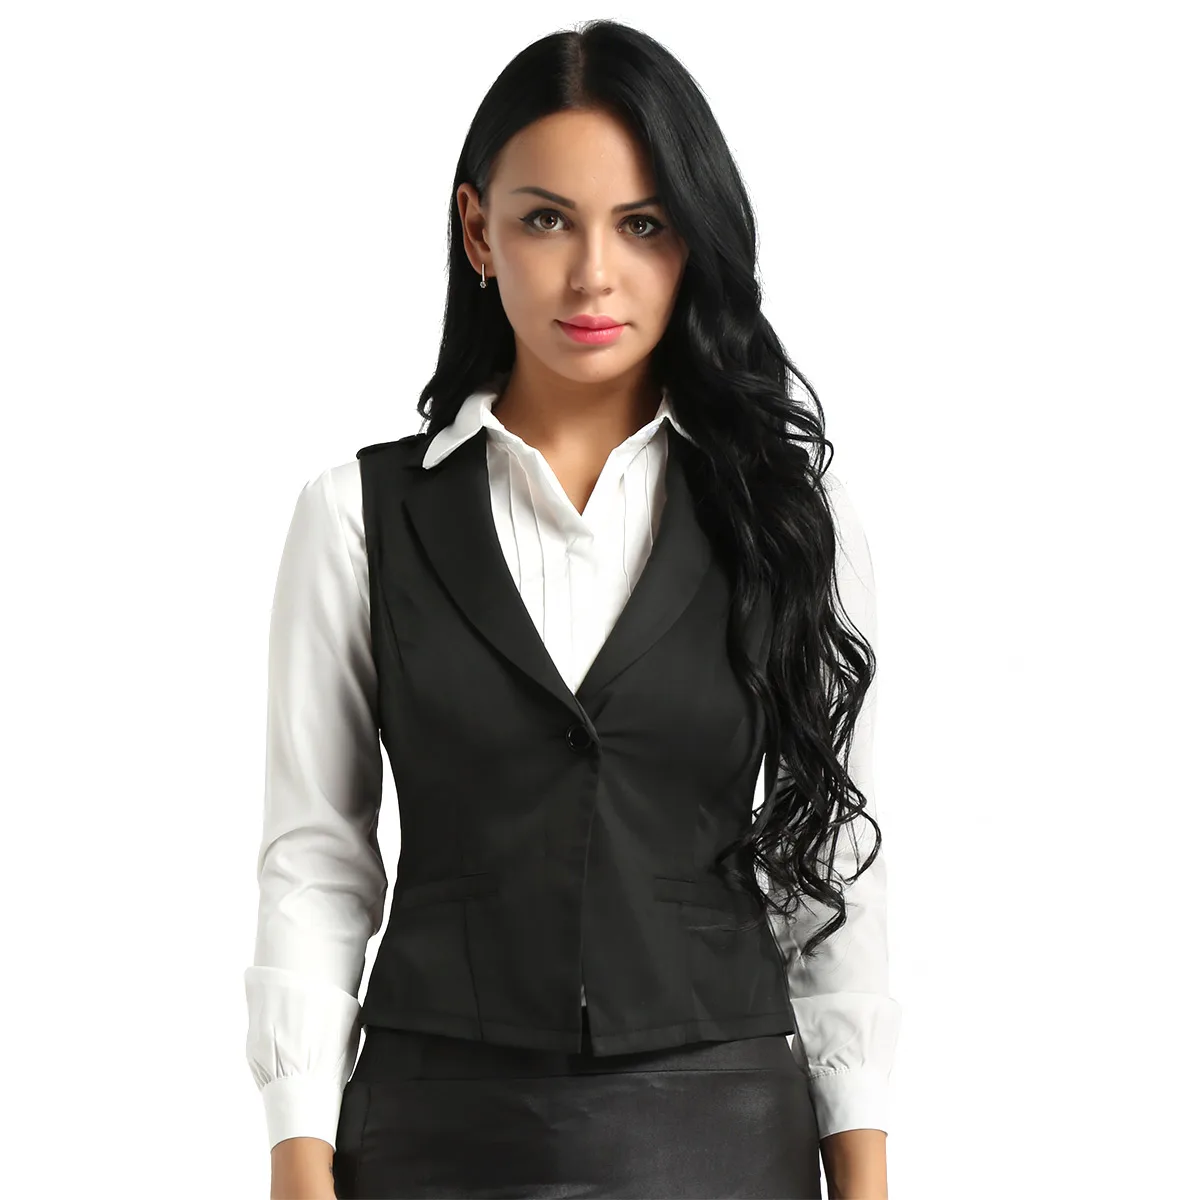 YiZYiF модная женская облегающая одежда костюм жилет с v-образным вырезом без рукавов на пуговицах строгий костюм деловой жилет облегающий костюм с жилетом - Цвет: Black